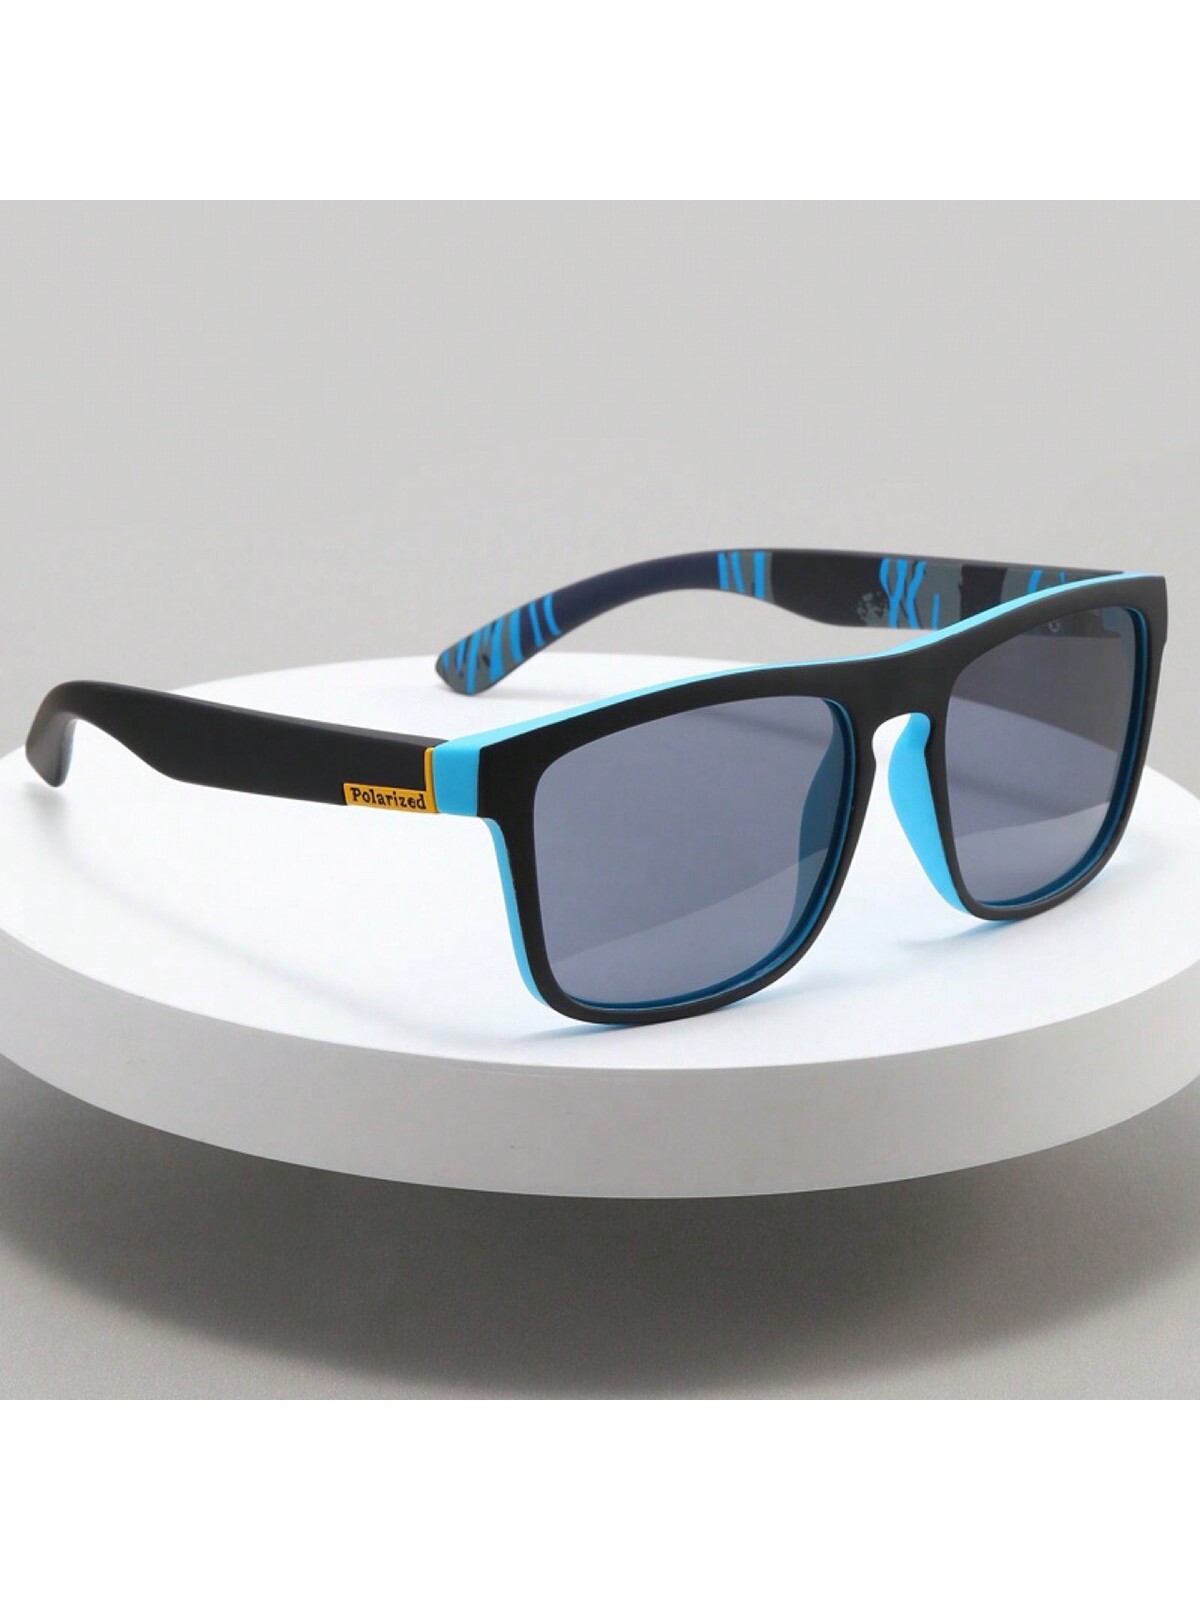 Поляризованные солнцезащитные очки D731 для спорта фото